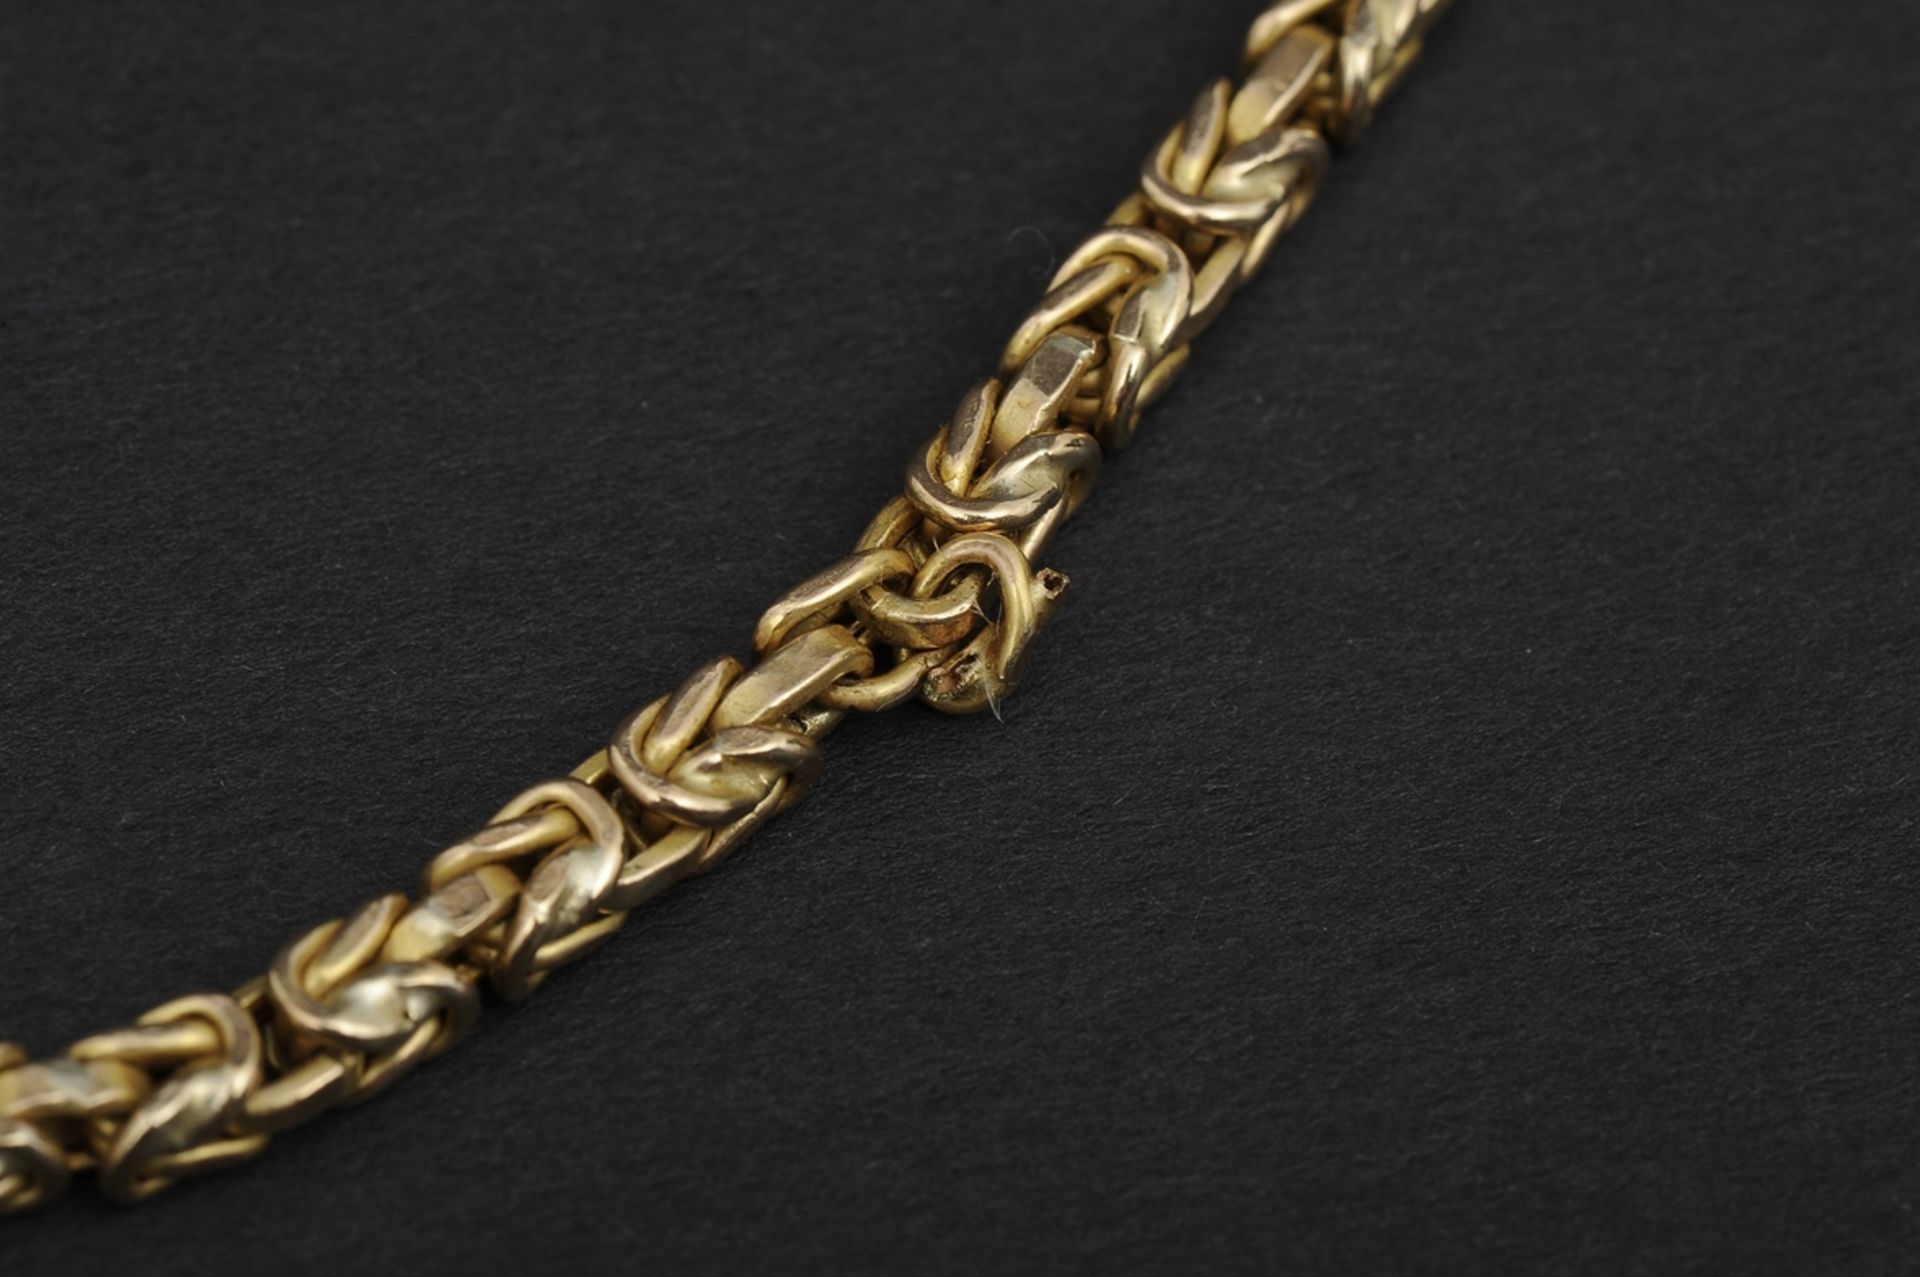 Halskette in 585er Gelbgold, aufwändiger Kettengliederdekor, 1 Stelle leicht aufgebogen, schadhaft. - Image 9 of 9